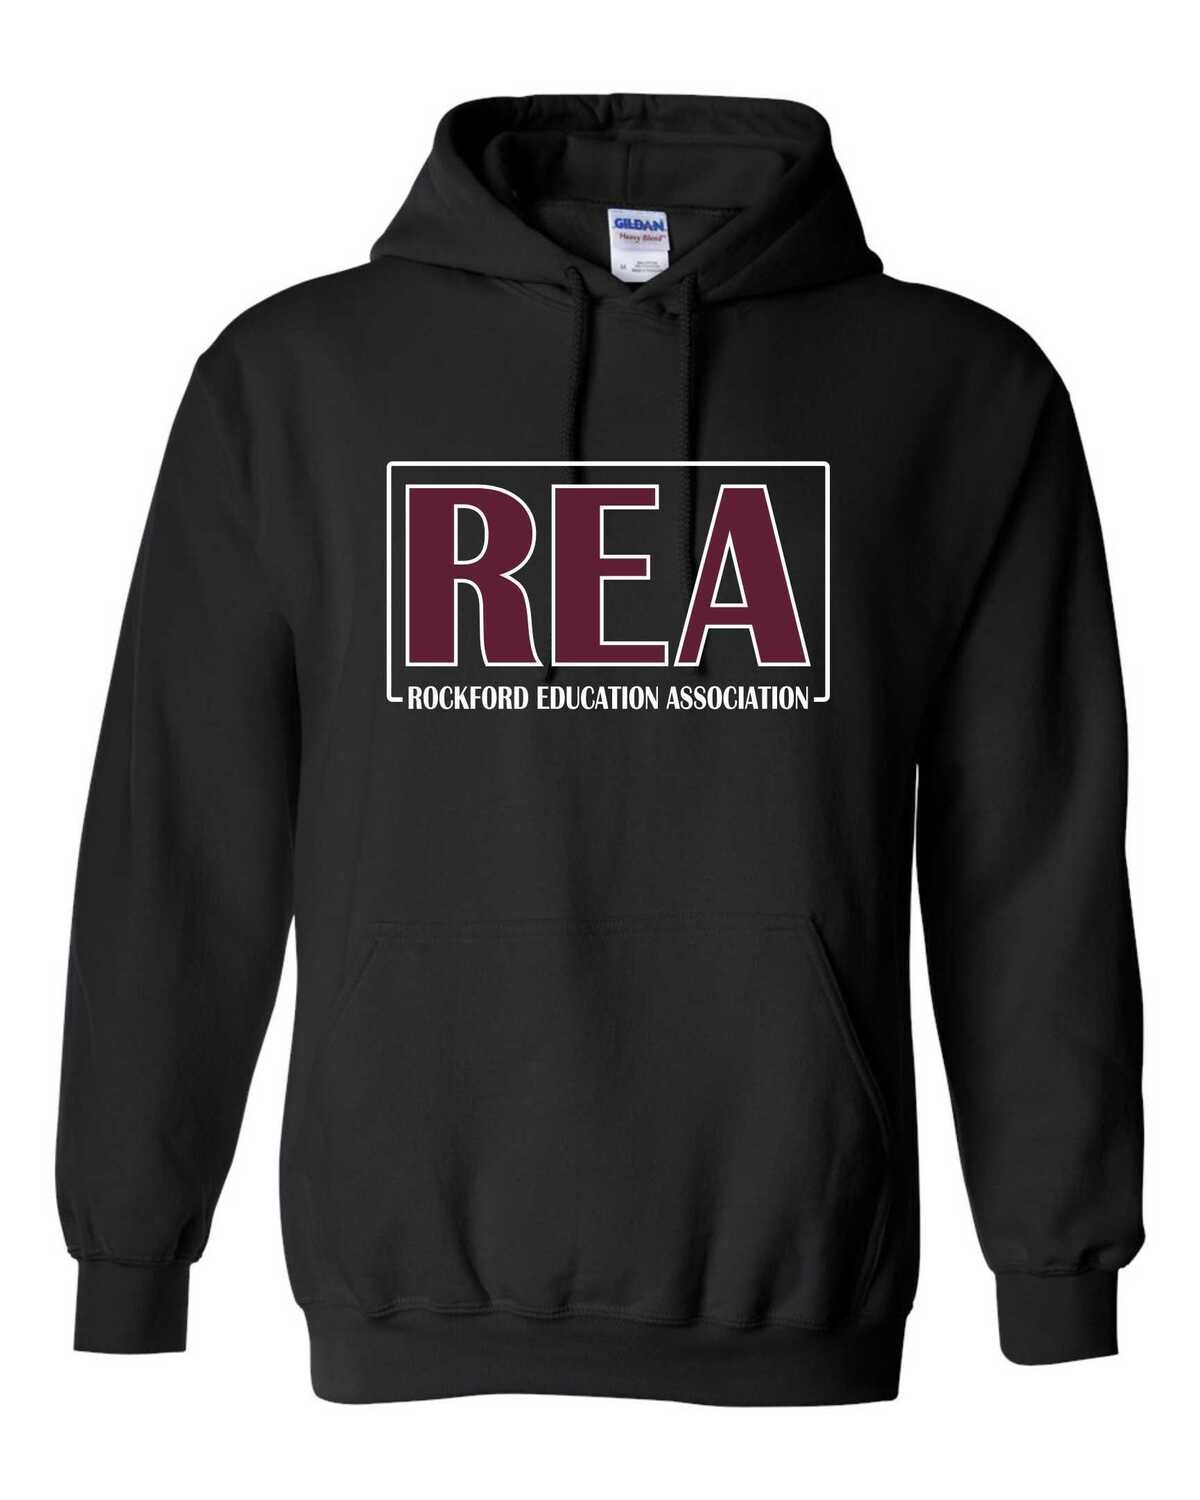 Rockford Education Association Hooded Sweatshirt, Black, GLITTER LOGO